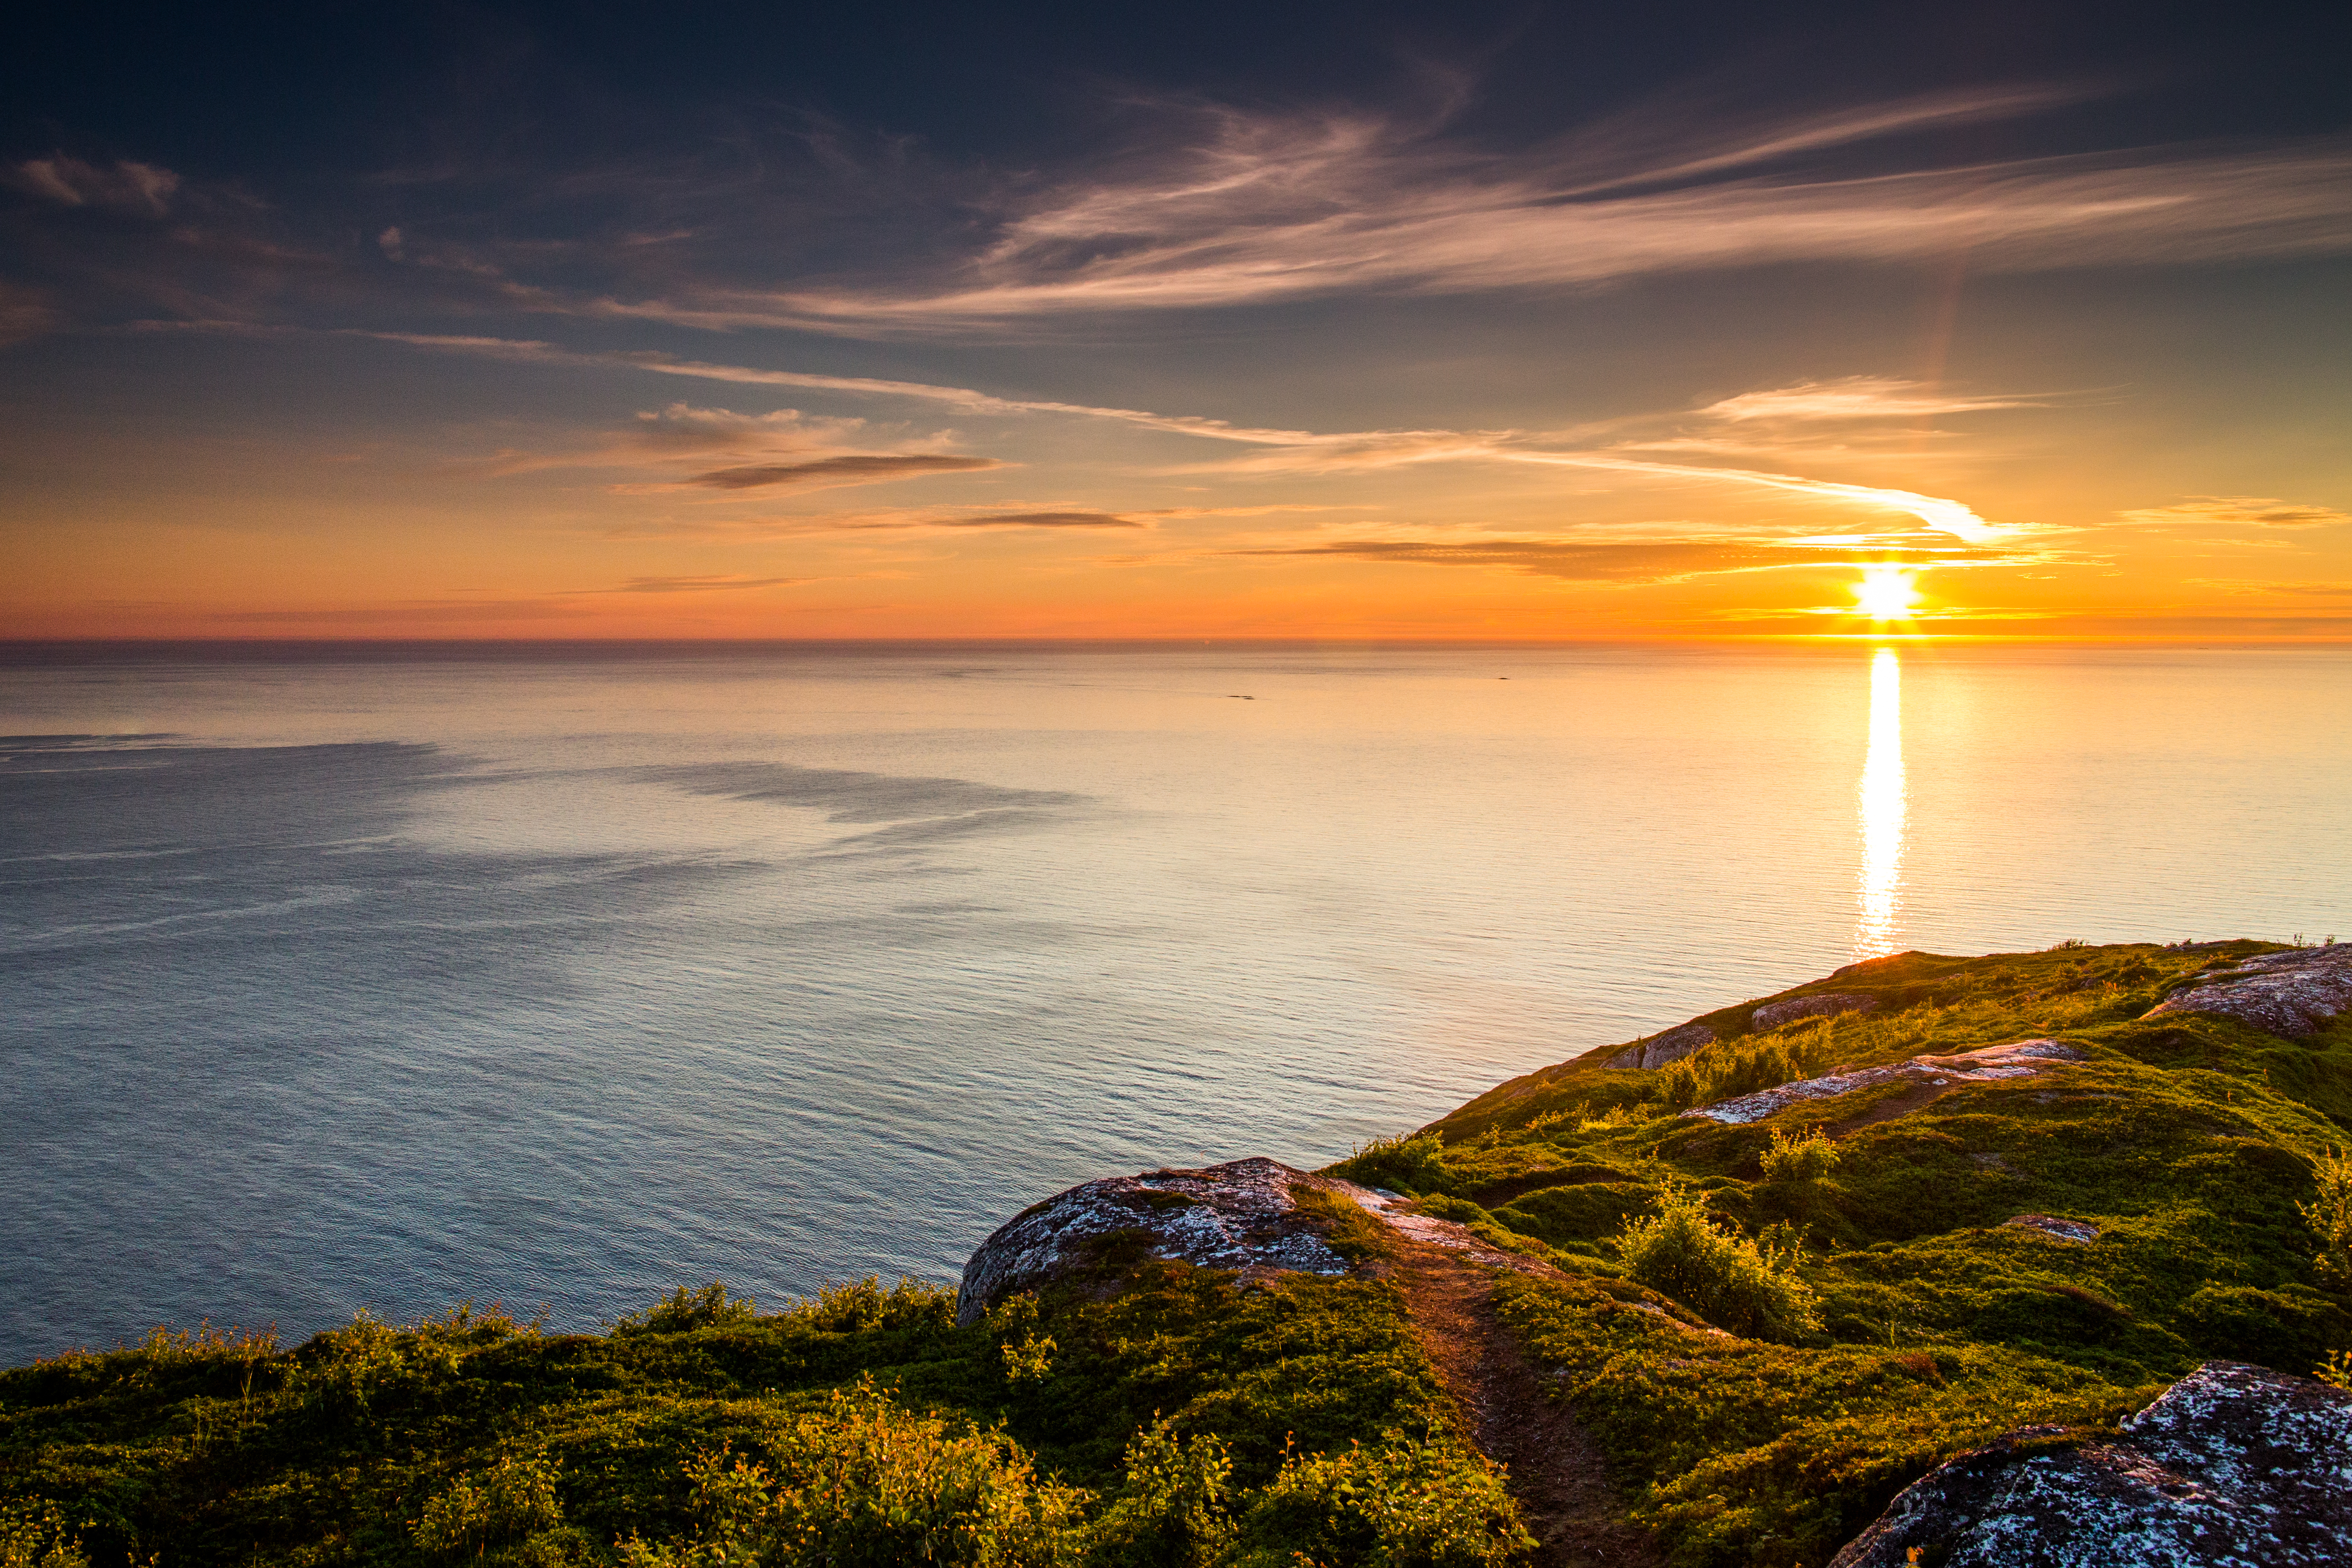 Los mejores lugares para disfrutar del sol de medianoche en Noruega | Skyscanner Espana